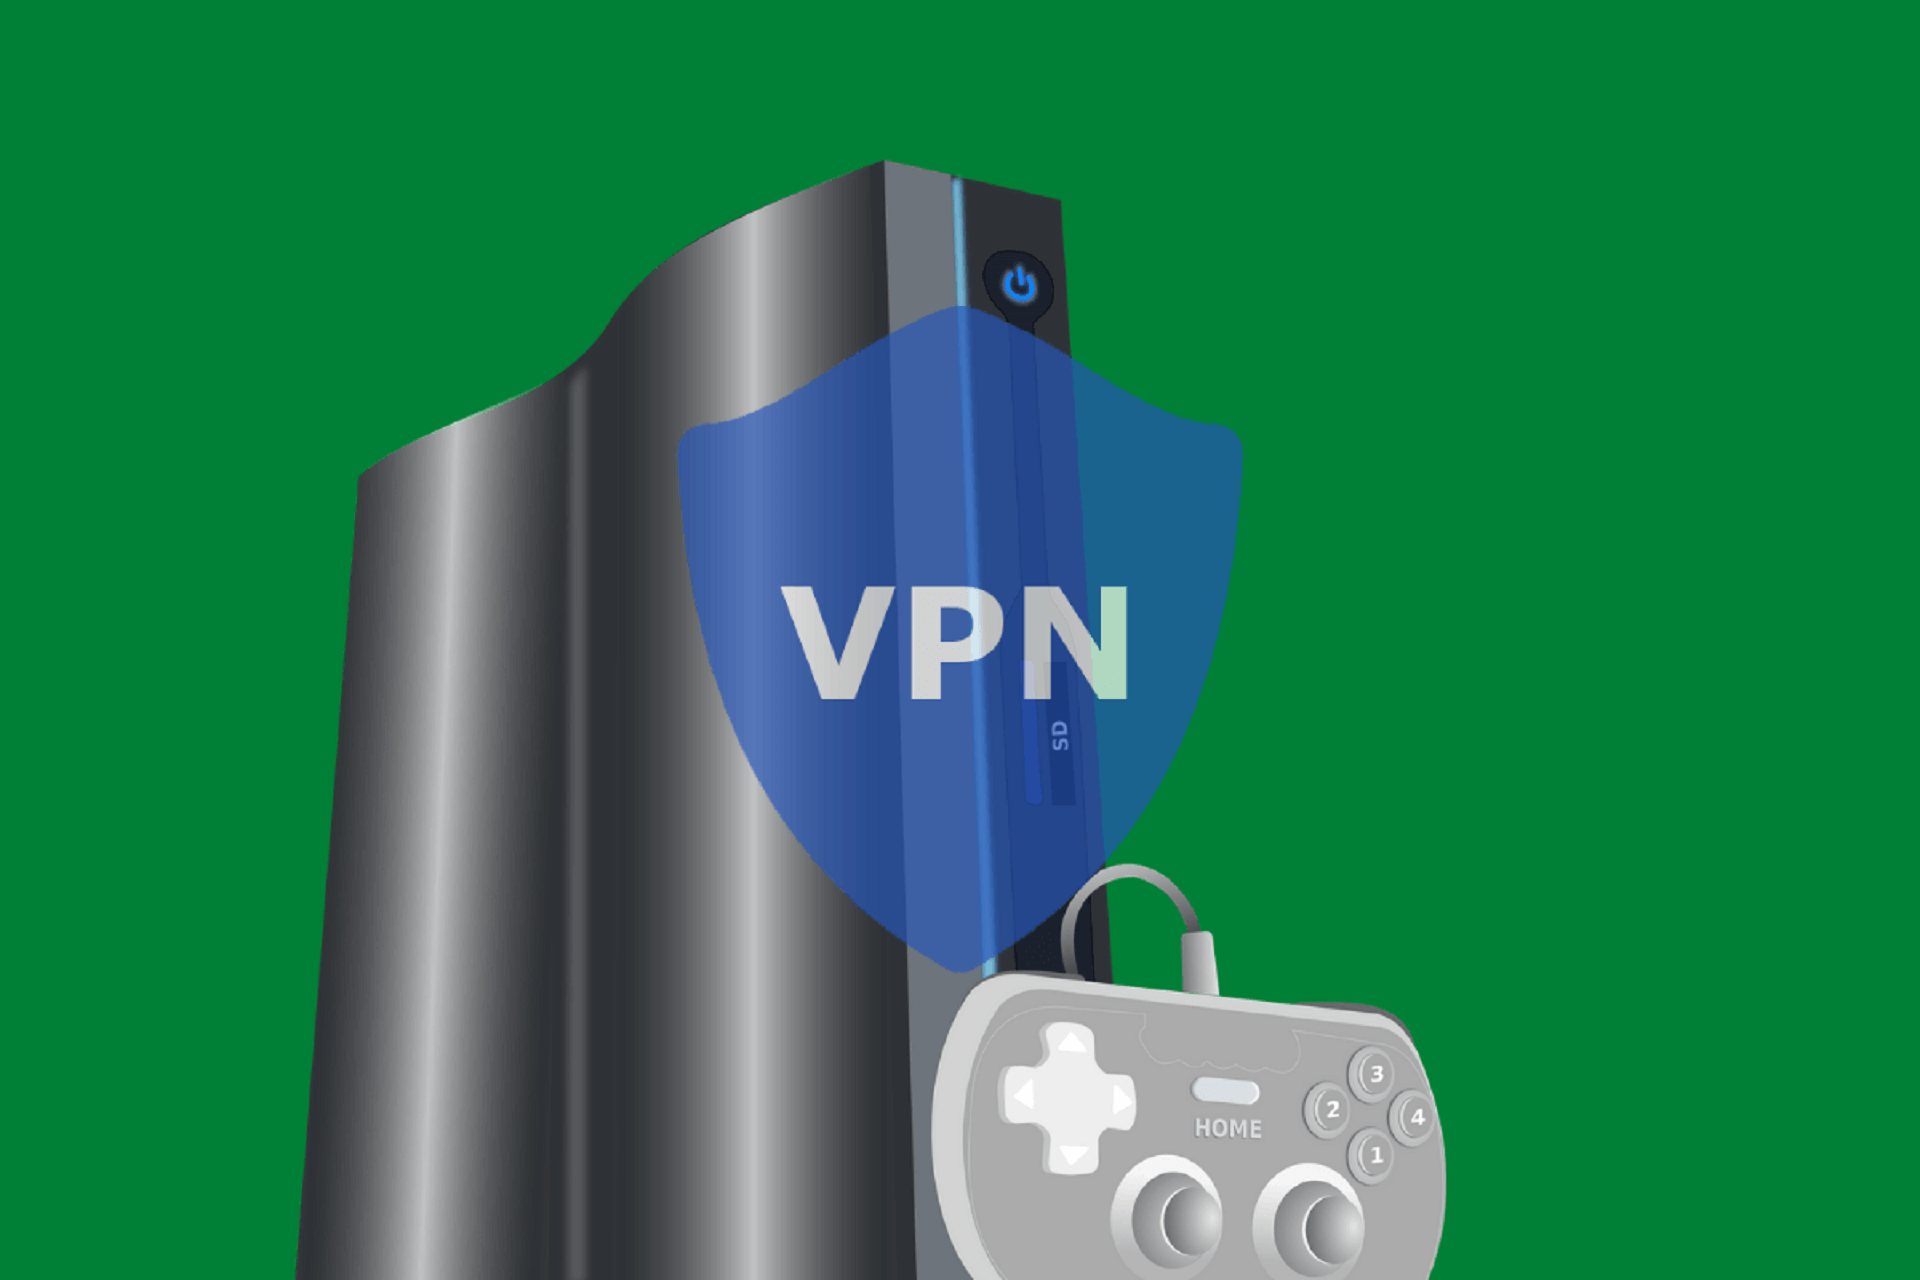 VPN software for hosting game servers